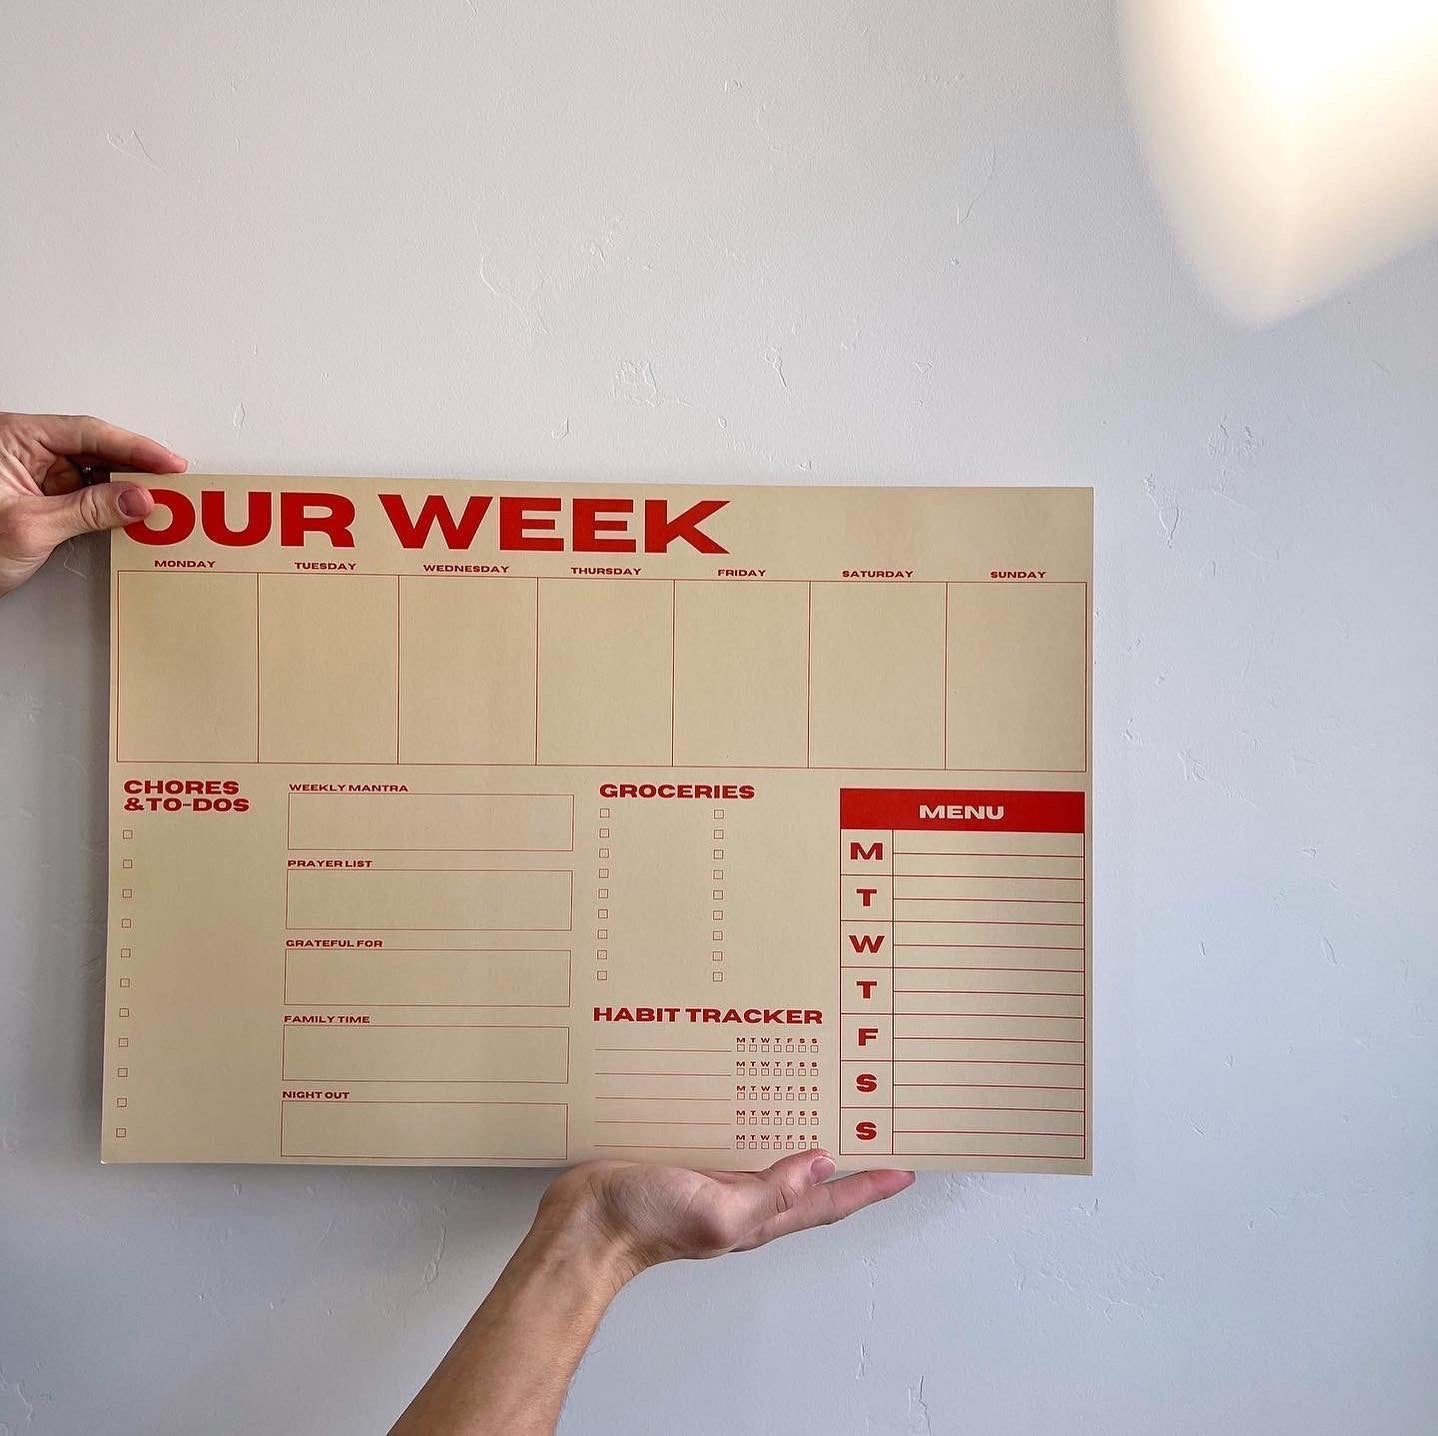 Our Week Planner Pad - Pink/Blue